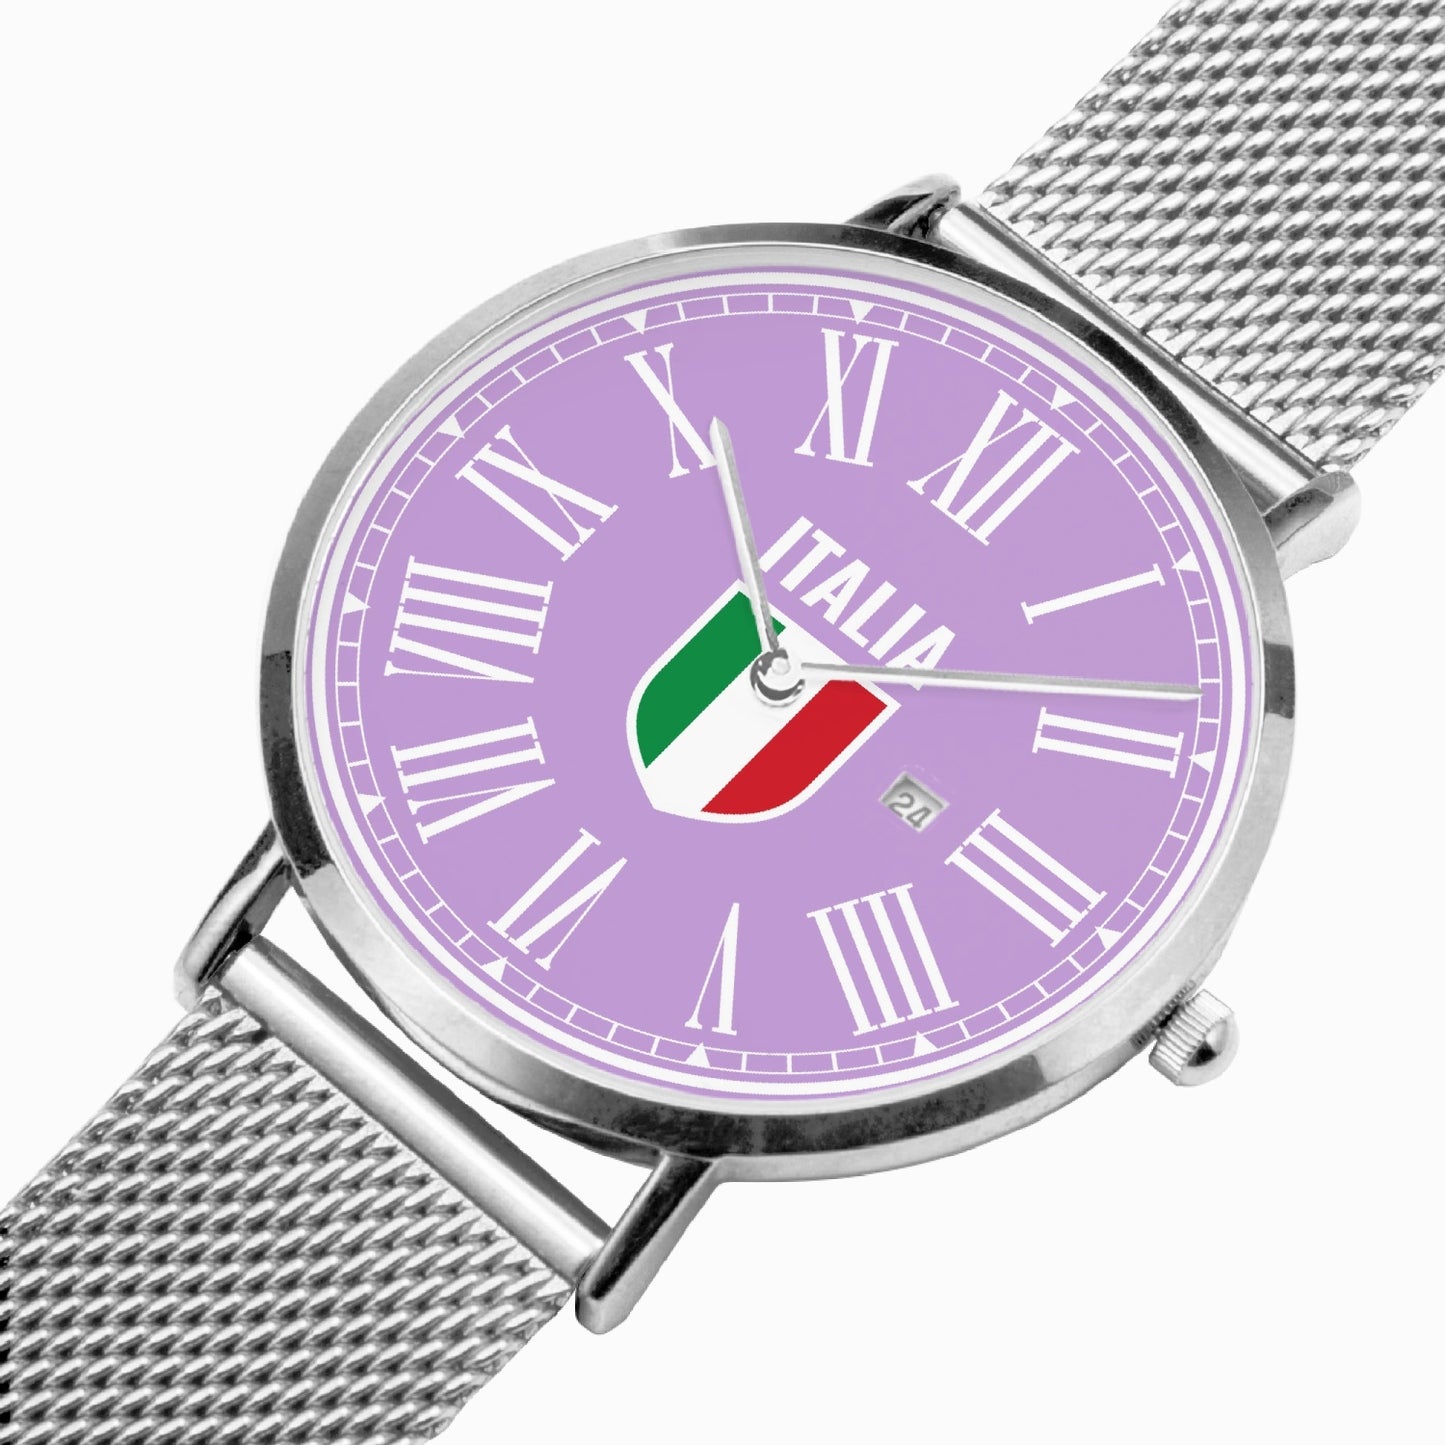 Orologio al quarzo con calendario ultrasottile in acciaio inossidabile - Viola Italia